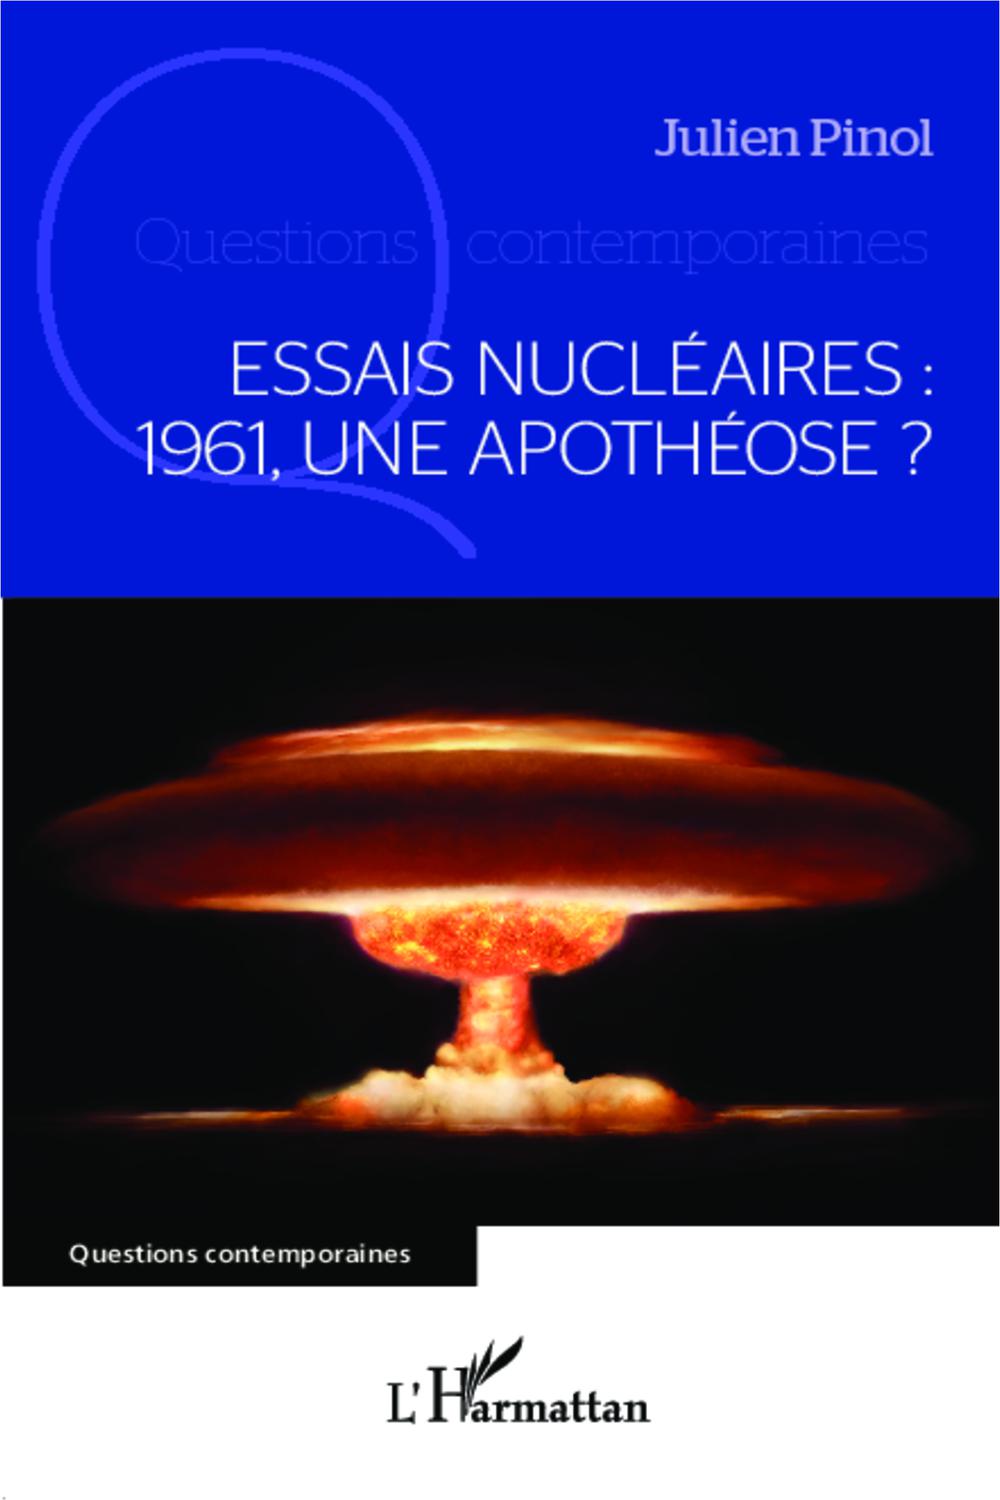 Essais nucléaires : 1961, une apothéose ? - Julien Pinol